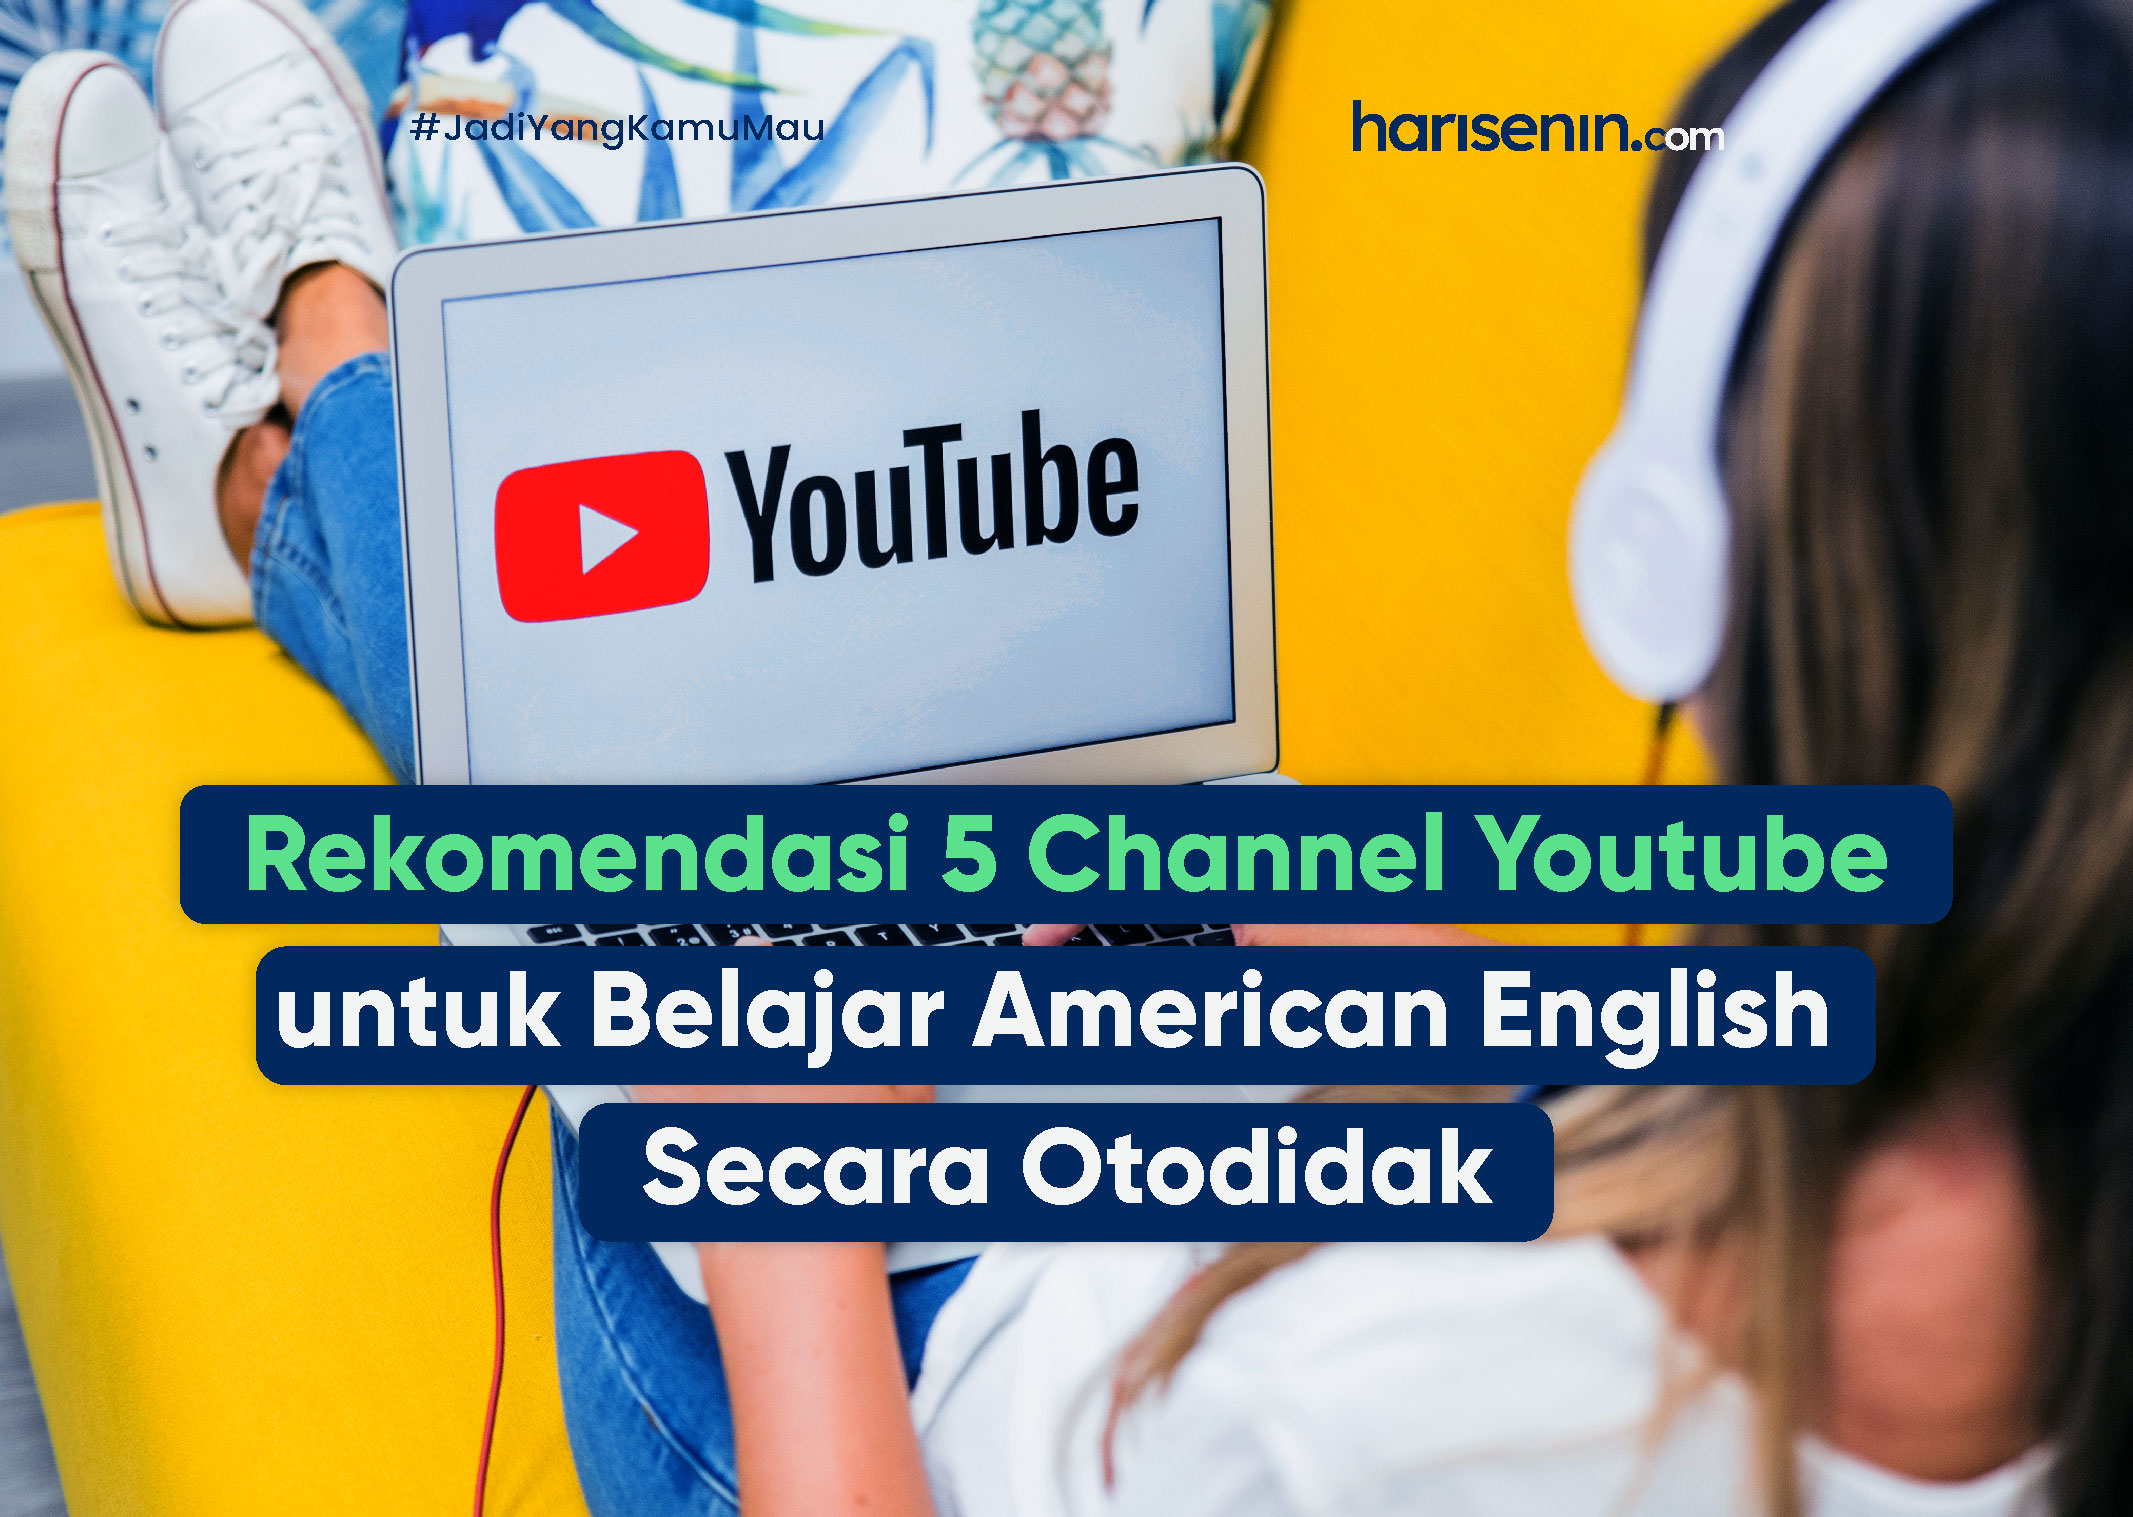 Rekomendasi 5 Channel Youtube untuk Belajar American English  Secara Otodidak